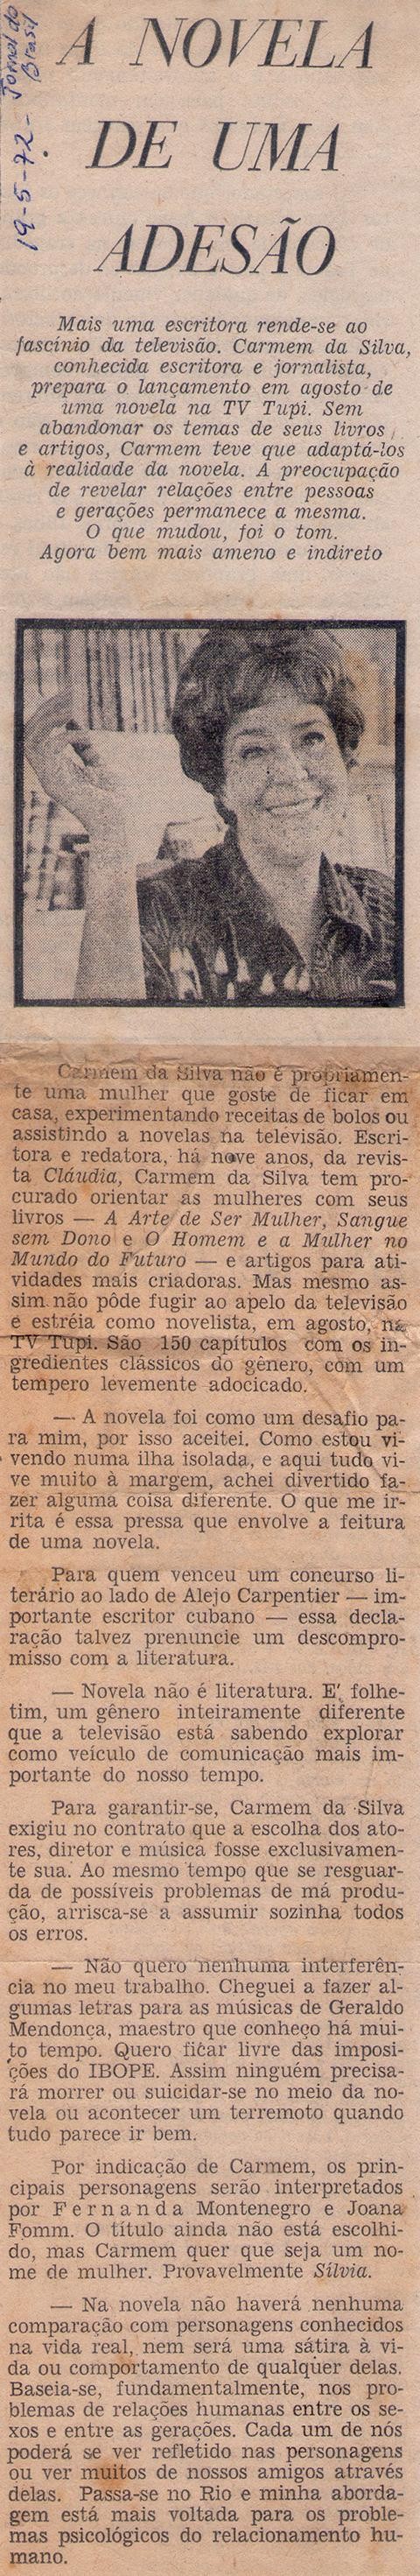 19 de Maio de 1972 - Jornal do Brasil. A novela de uma adesão.